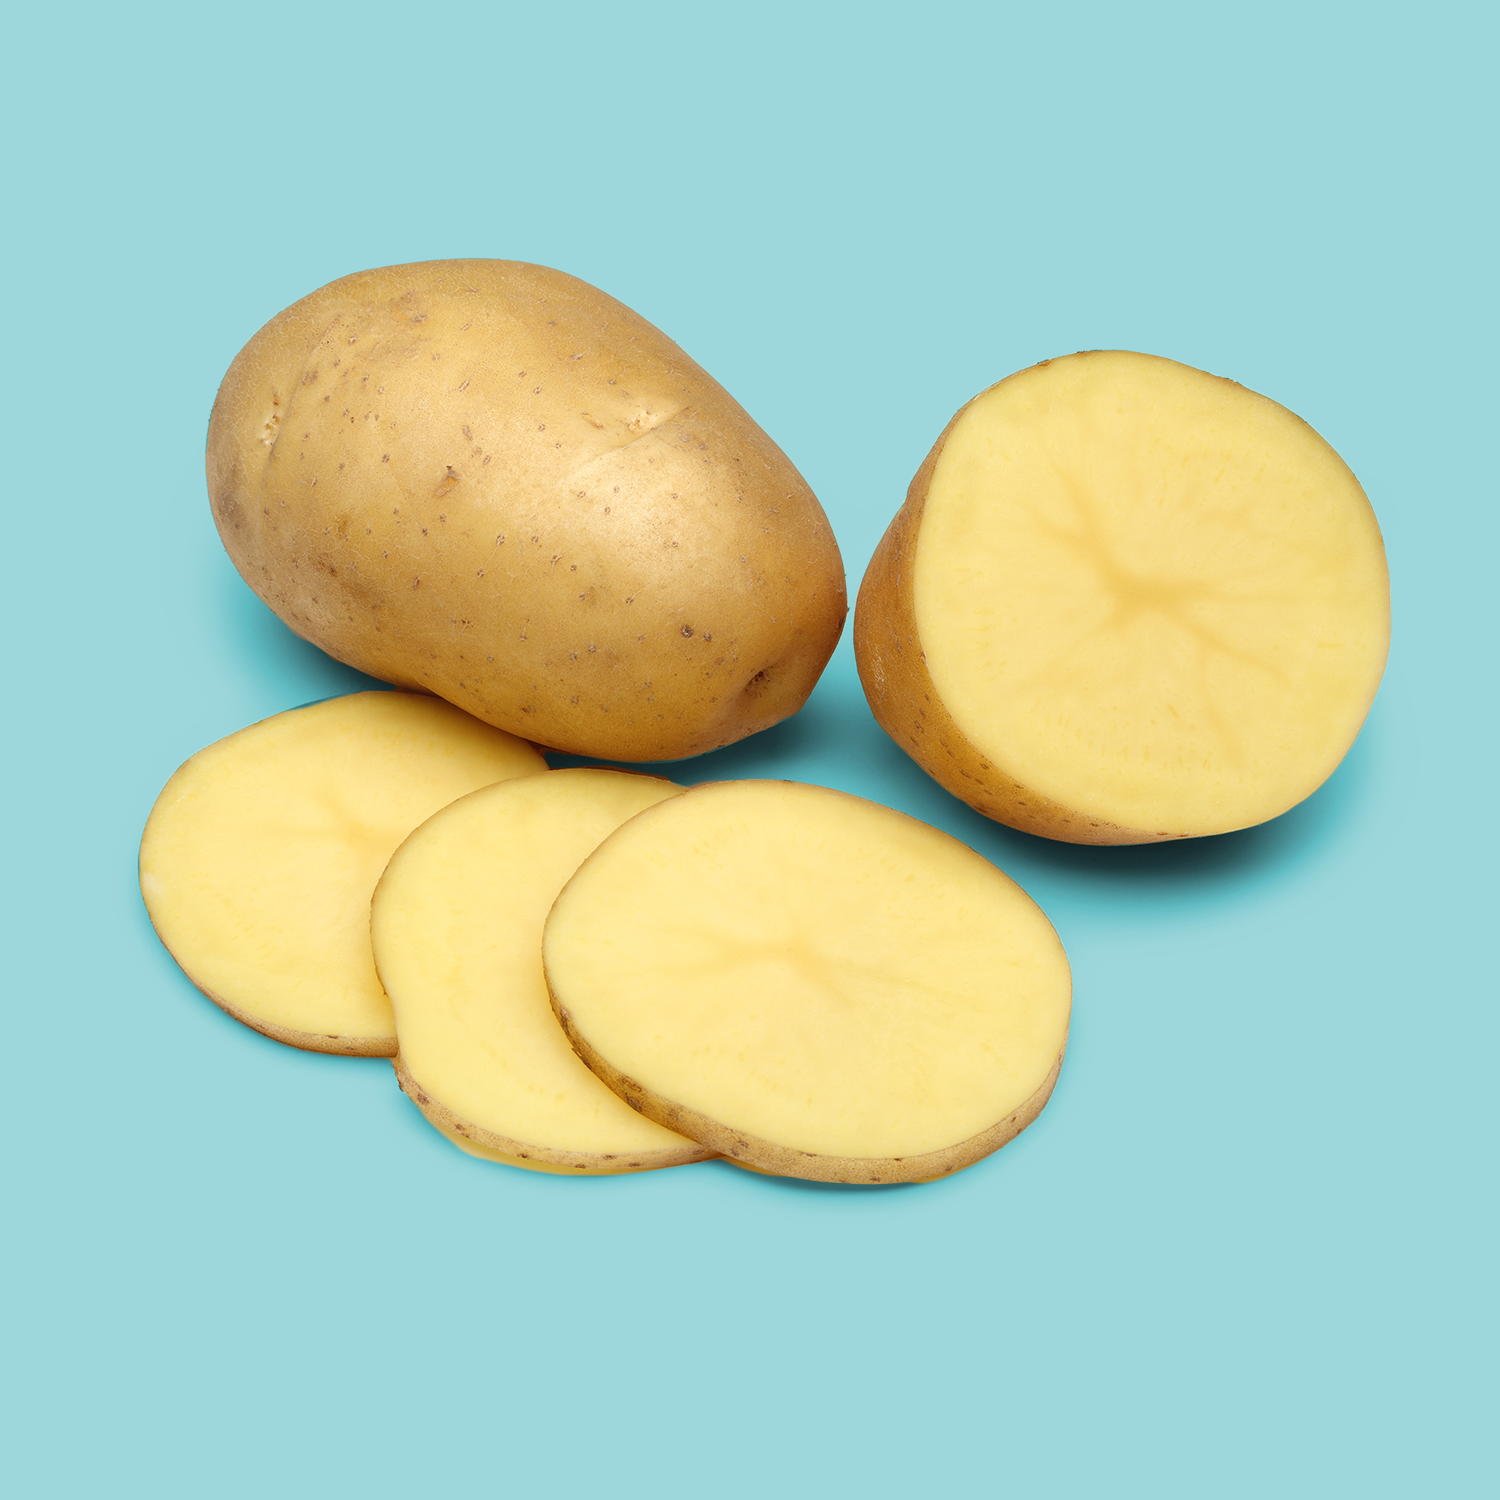 Yukon gold potato, Root vegetable, Potato, Food, Russet burbank potato, Vegetable, Tuber, Solanum, Produce, Plant, 